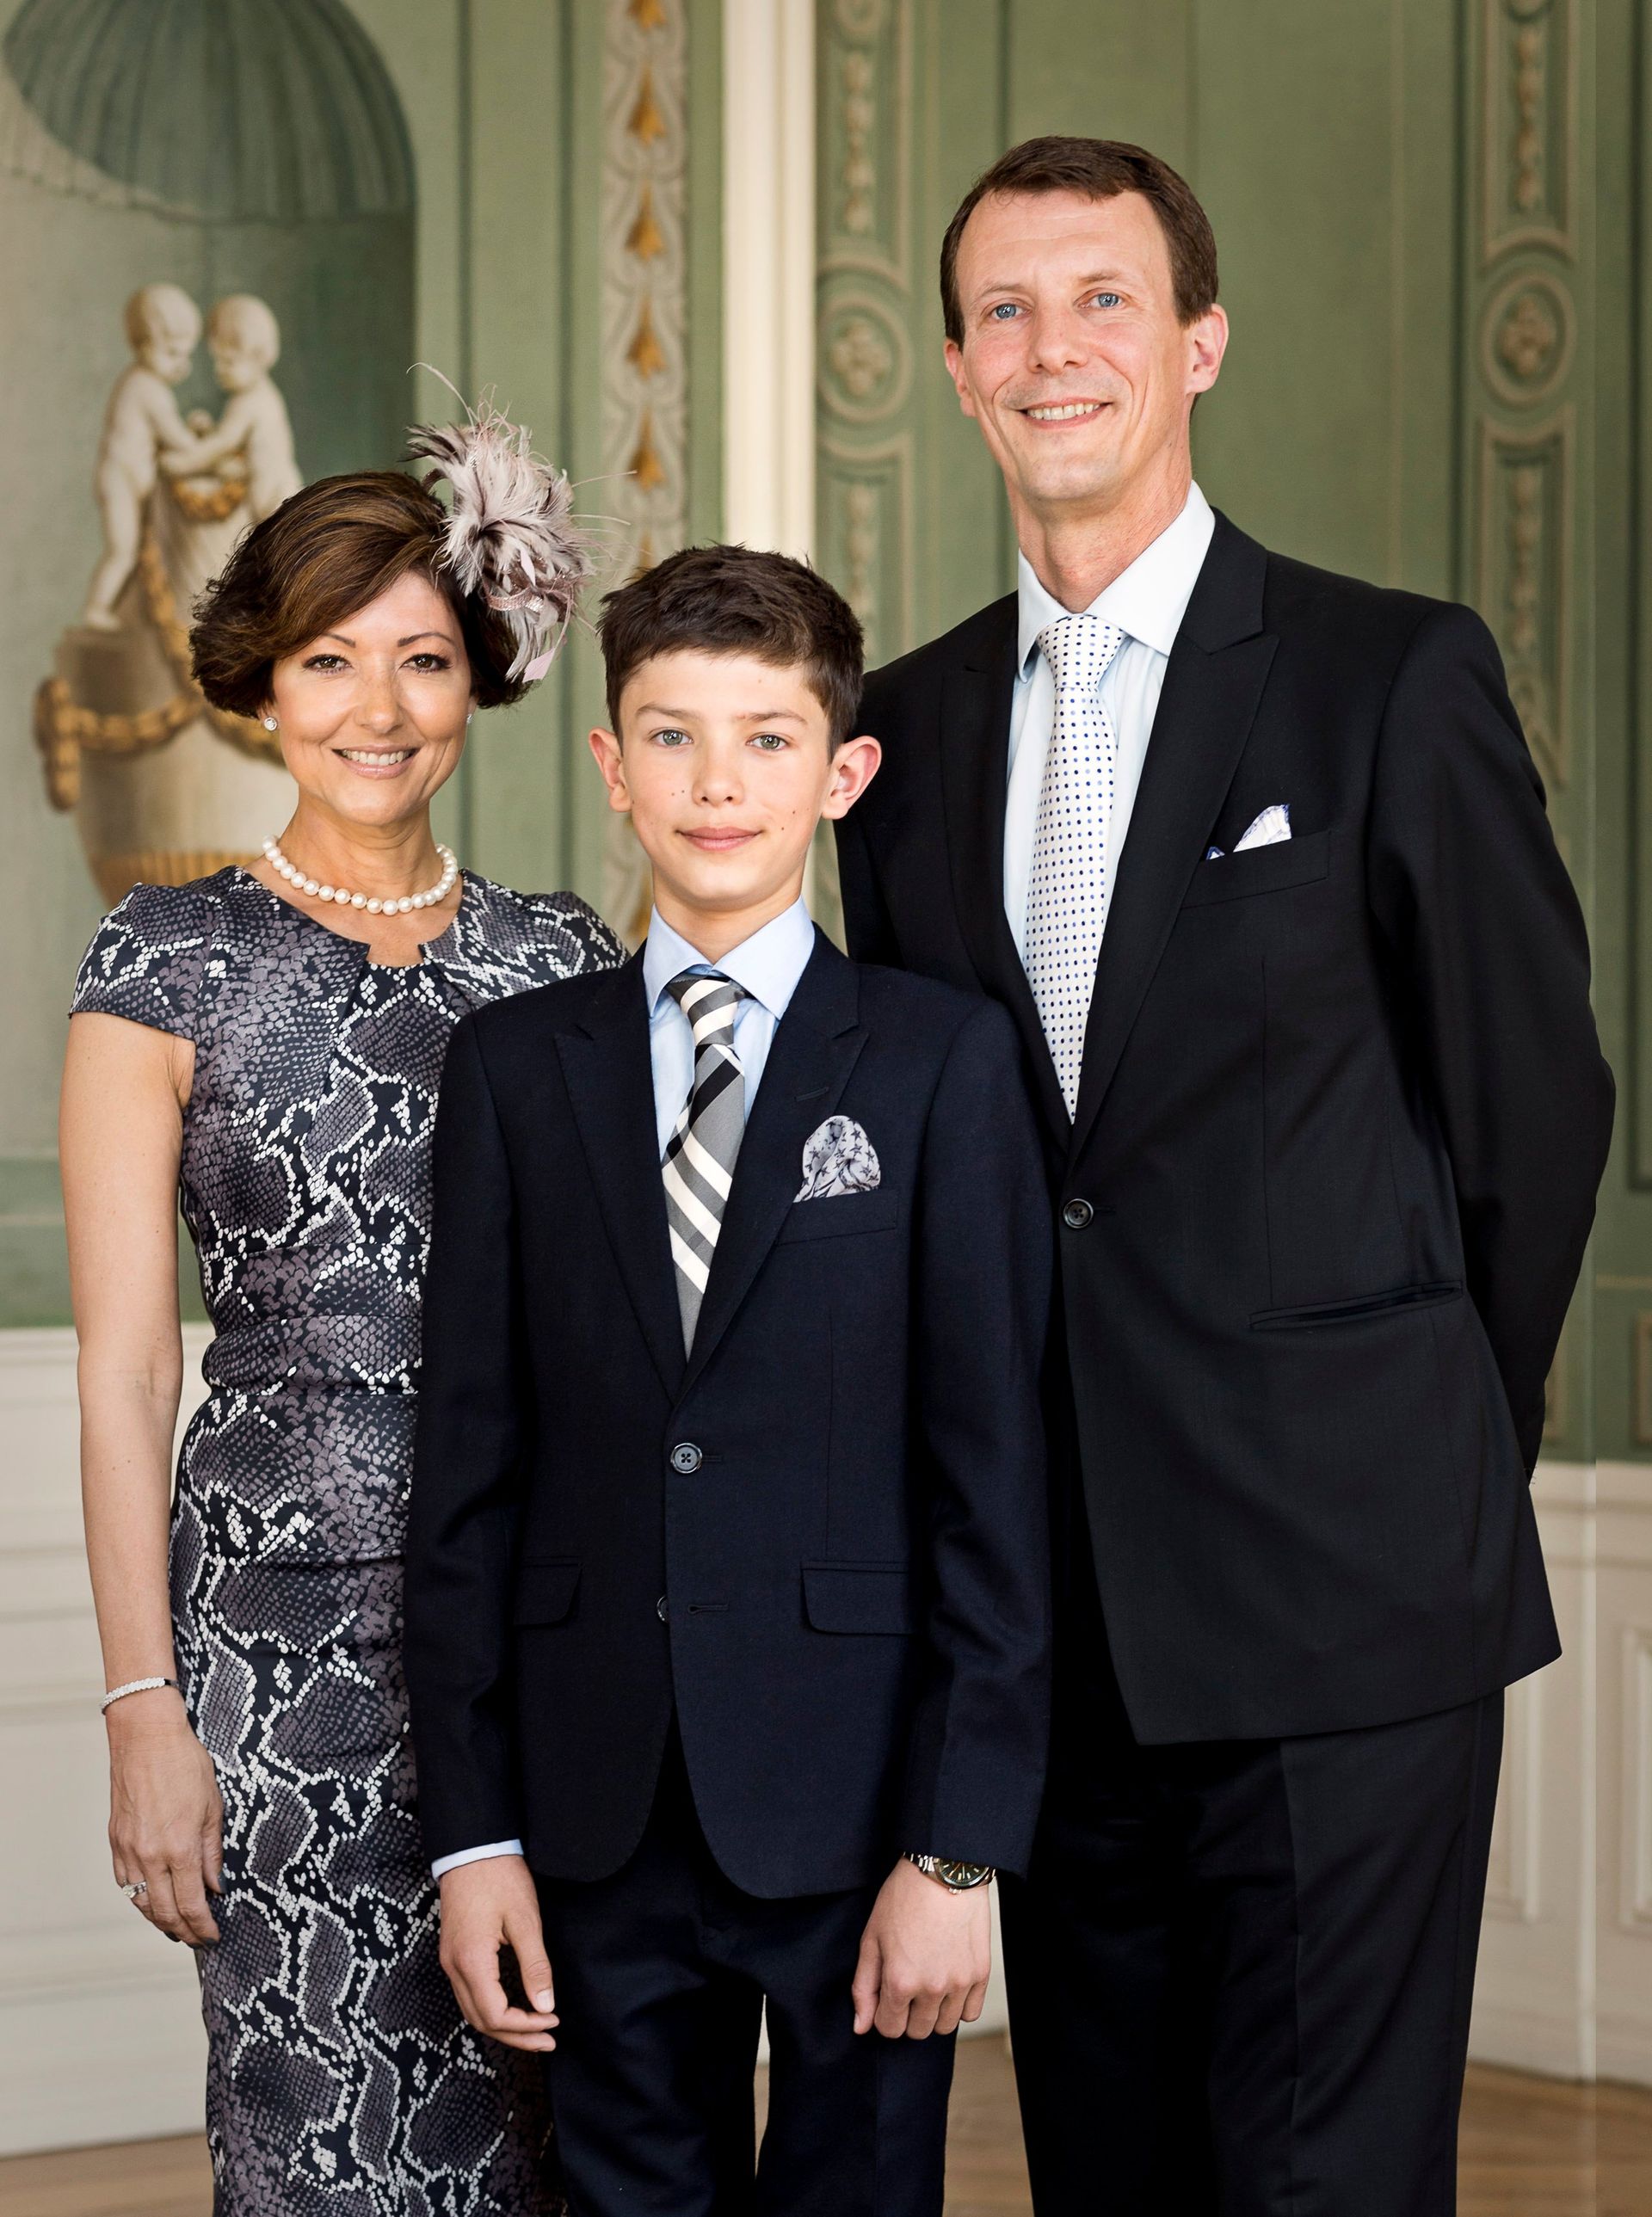 Op de foto met zijn ouders, Joachim en Alexandra, ter gelegenheid van zijn confirmatie, 18 mei 2013.